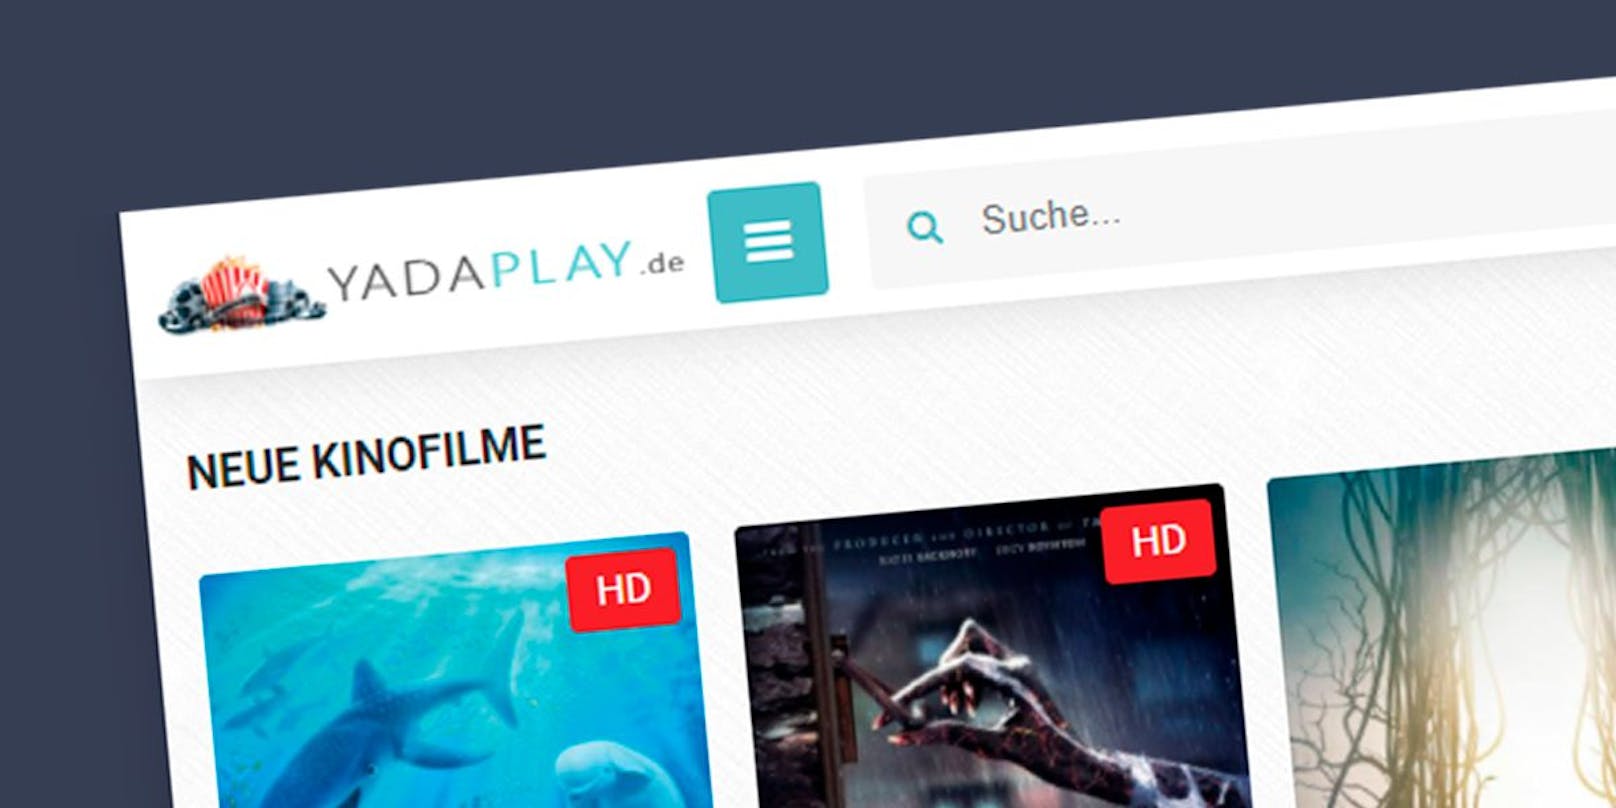 Hinter dem angeblichen Streaming-Anbieter yadaplay.de verbirgt sich eine Abo-Falle.